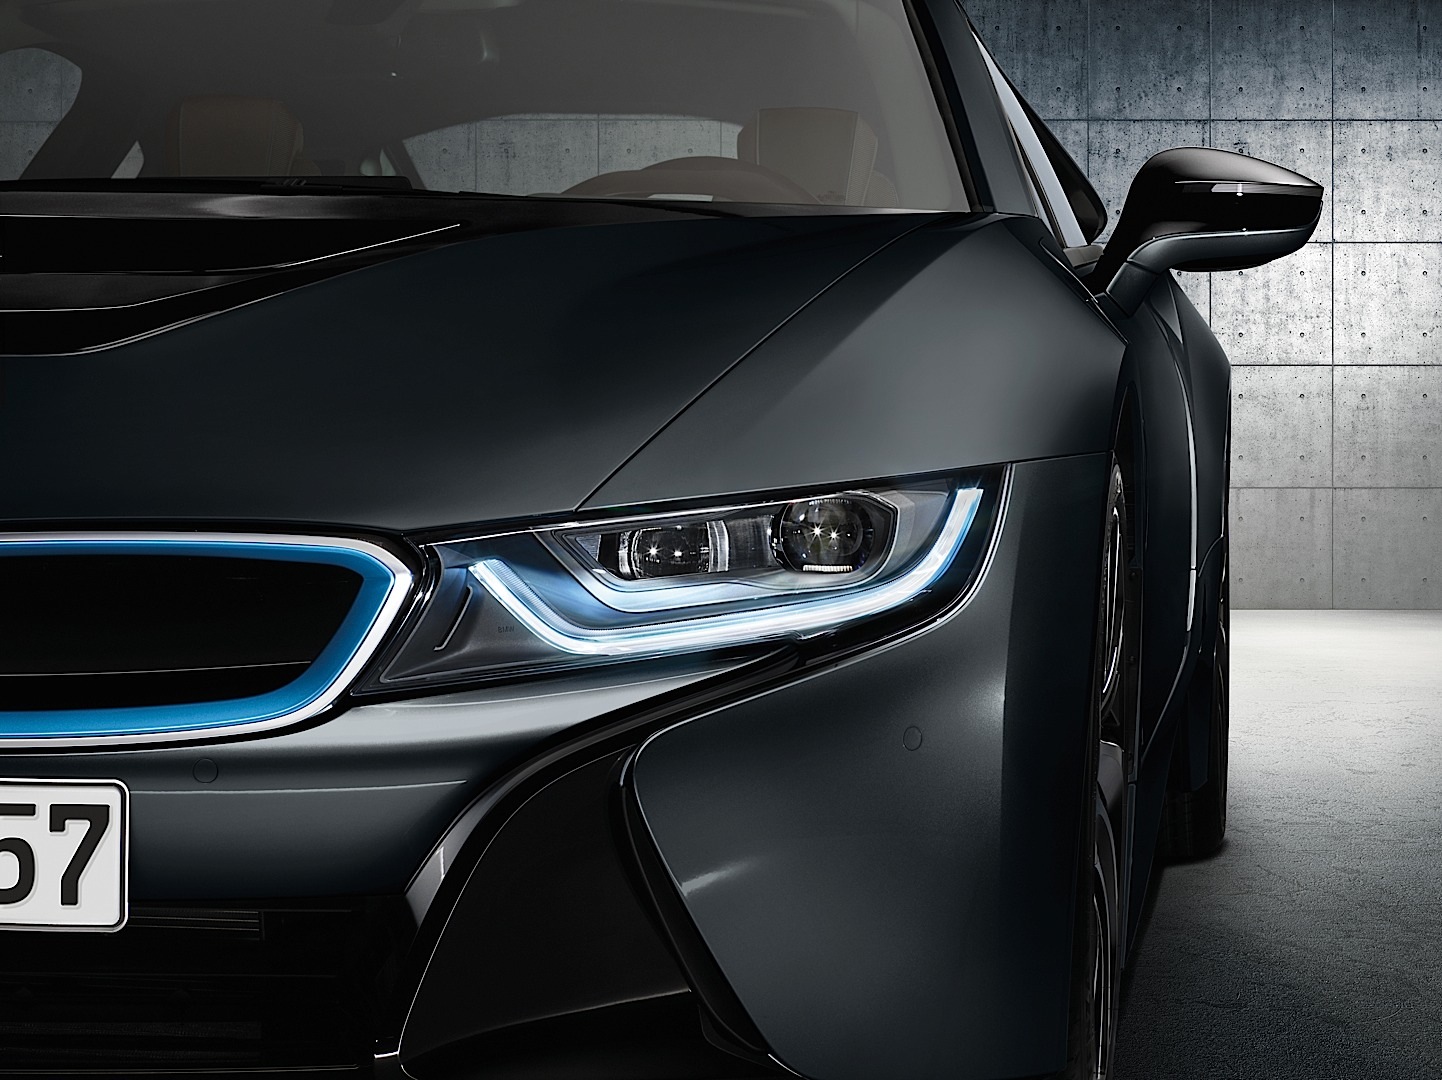 Faros láser de BMW: 11.570 euros